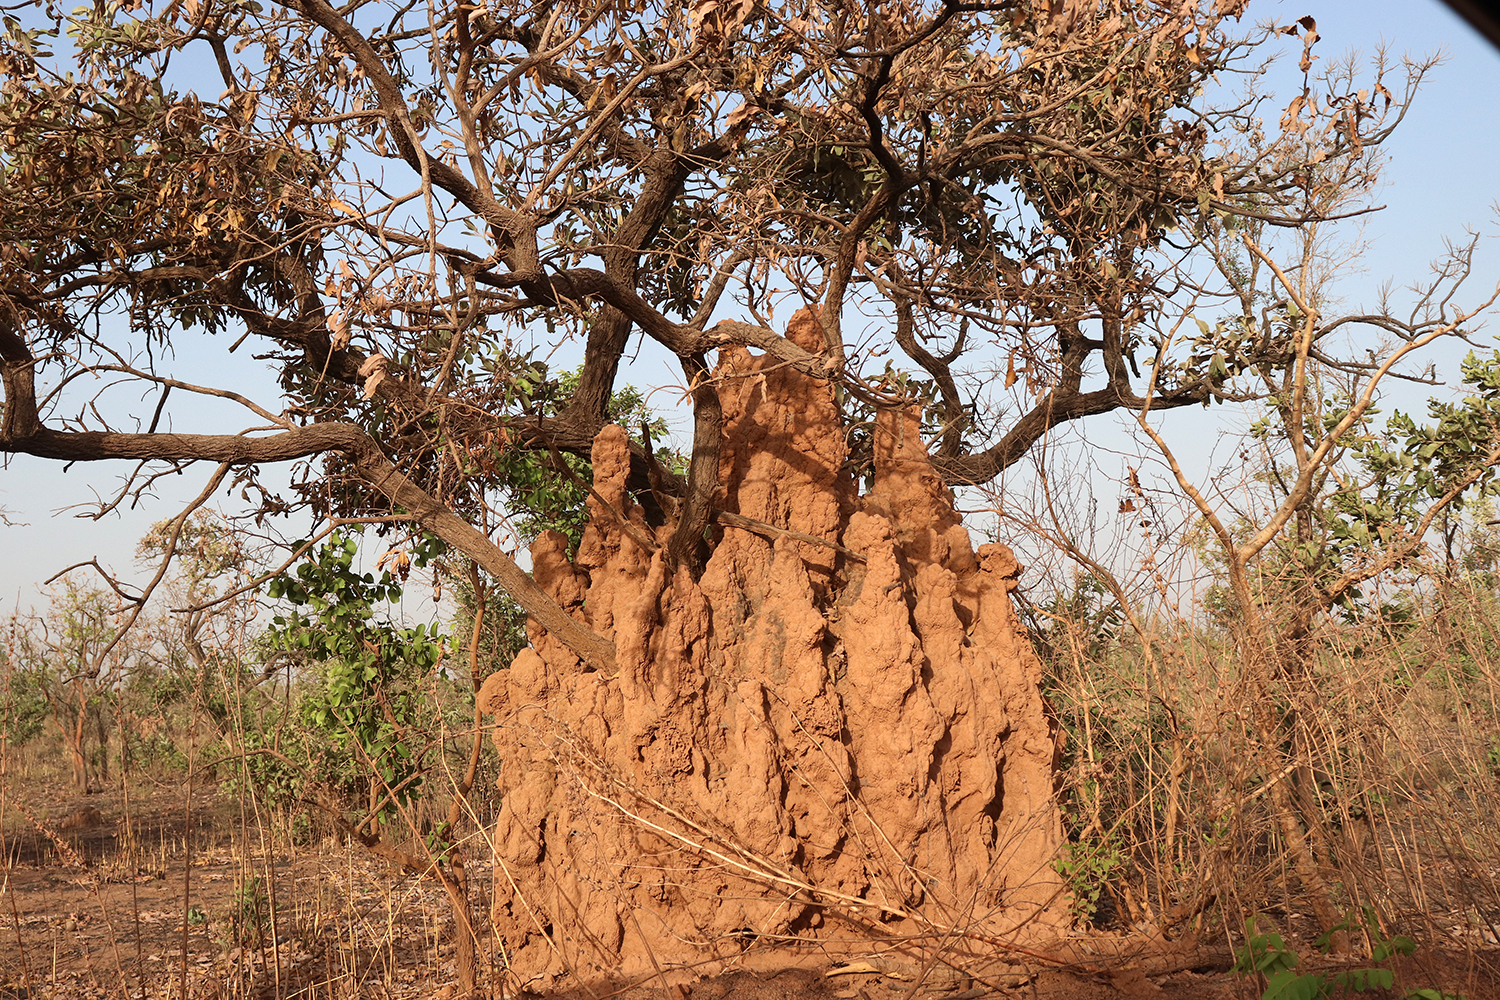 Des termitières cathédrales construites par des termites qui s’installent autour des arbres, mangent leurs racines et les asphyxient.   